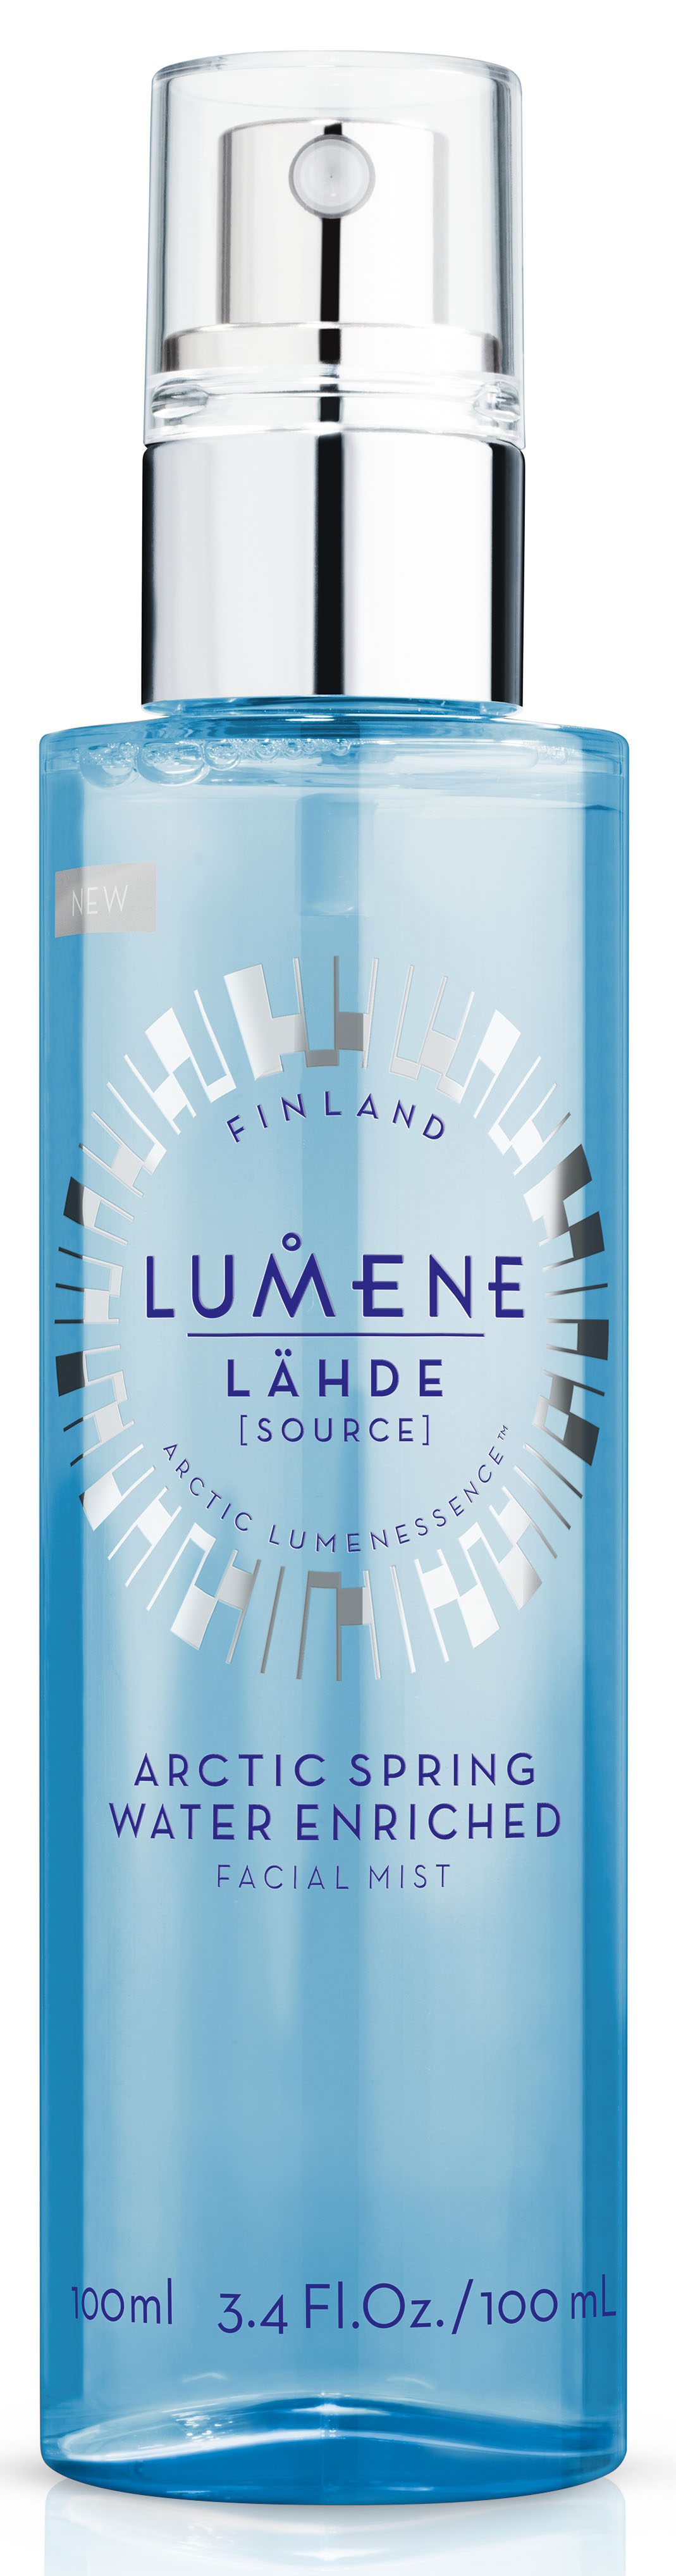 Lumene Lahde Увлажняющая освежающая дымка для лица, 100 мл